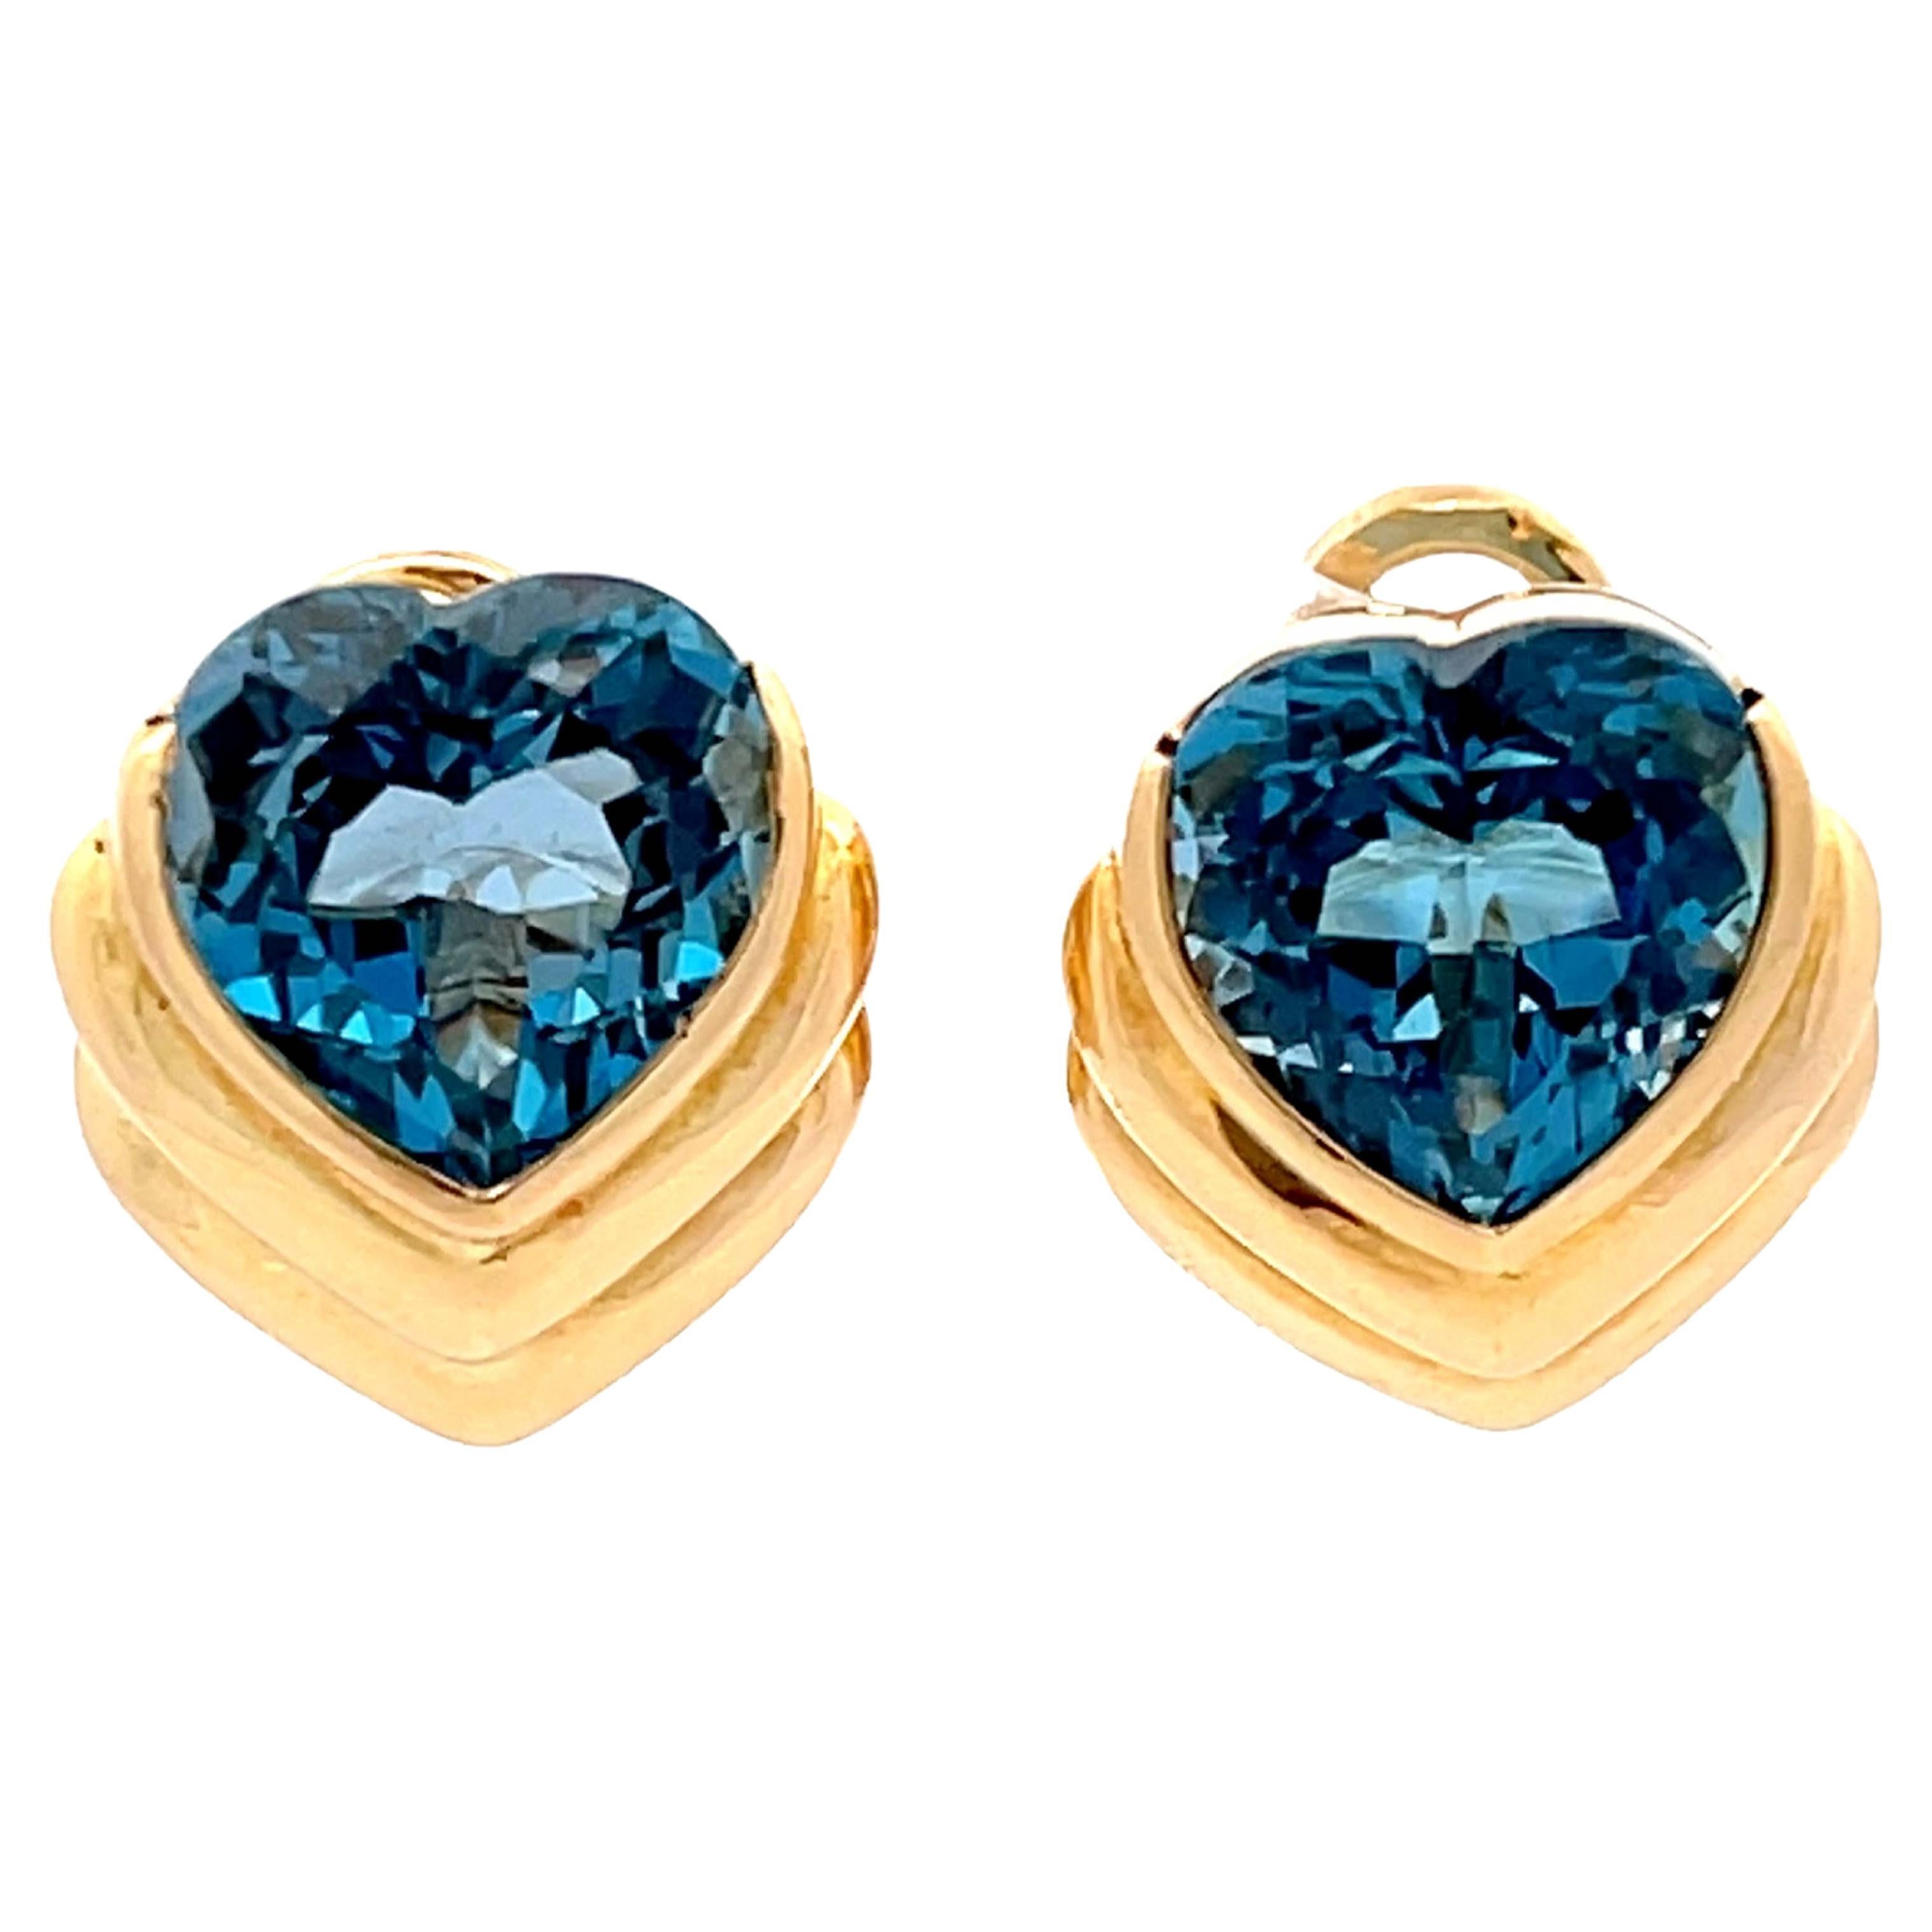 Blue Heart Shaped Topaz Earrings in 18k Yellow Gold For Sale